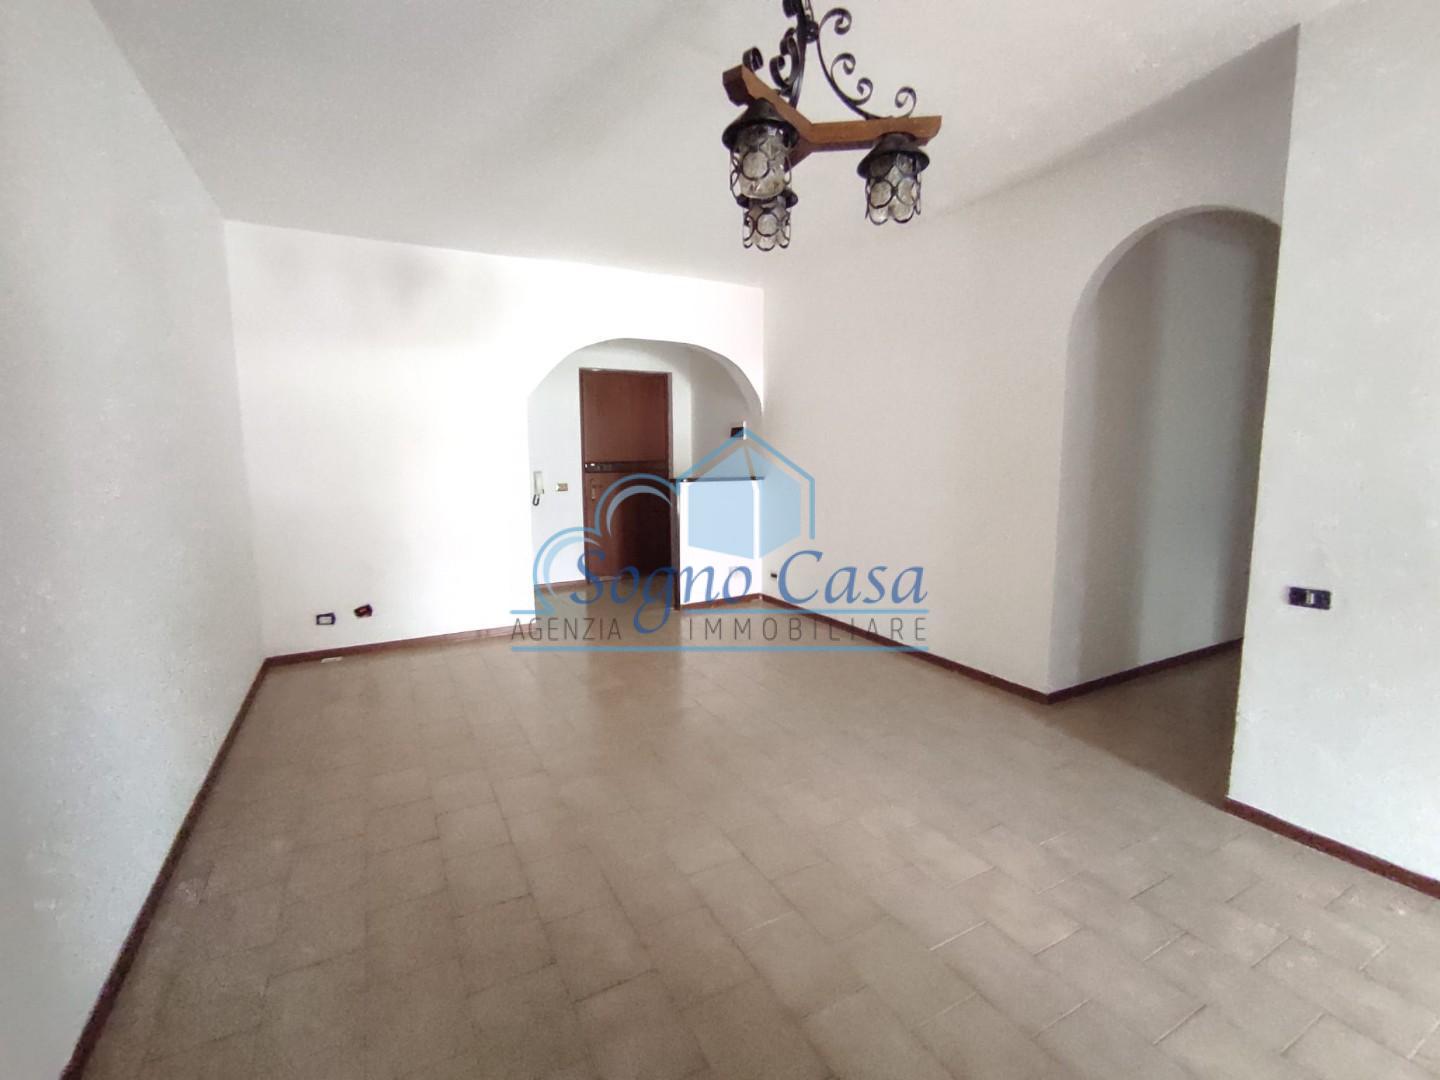 Appartamento in vendita a Ortonovo, 4 locali, prezzo € 120.000 | CambioCasa.it